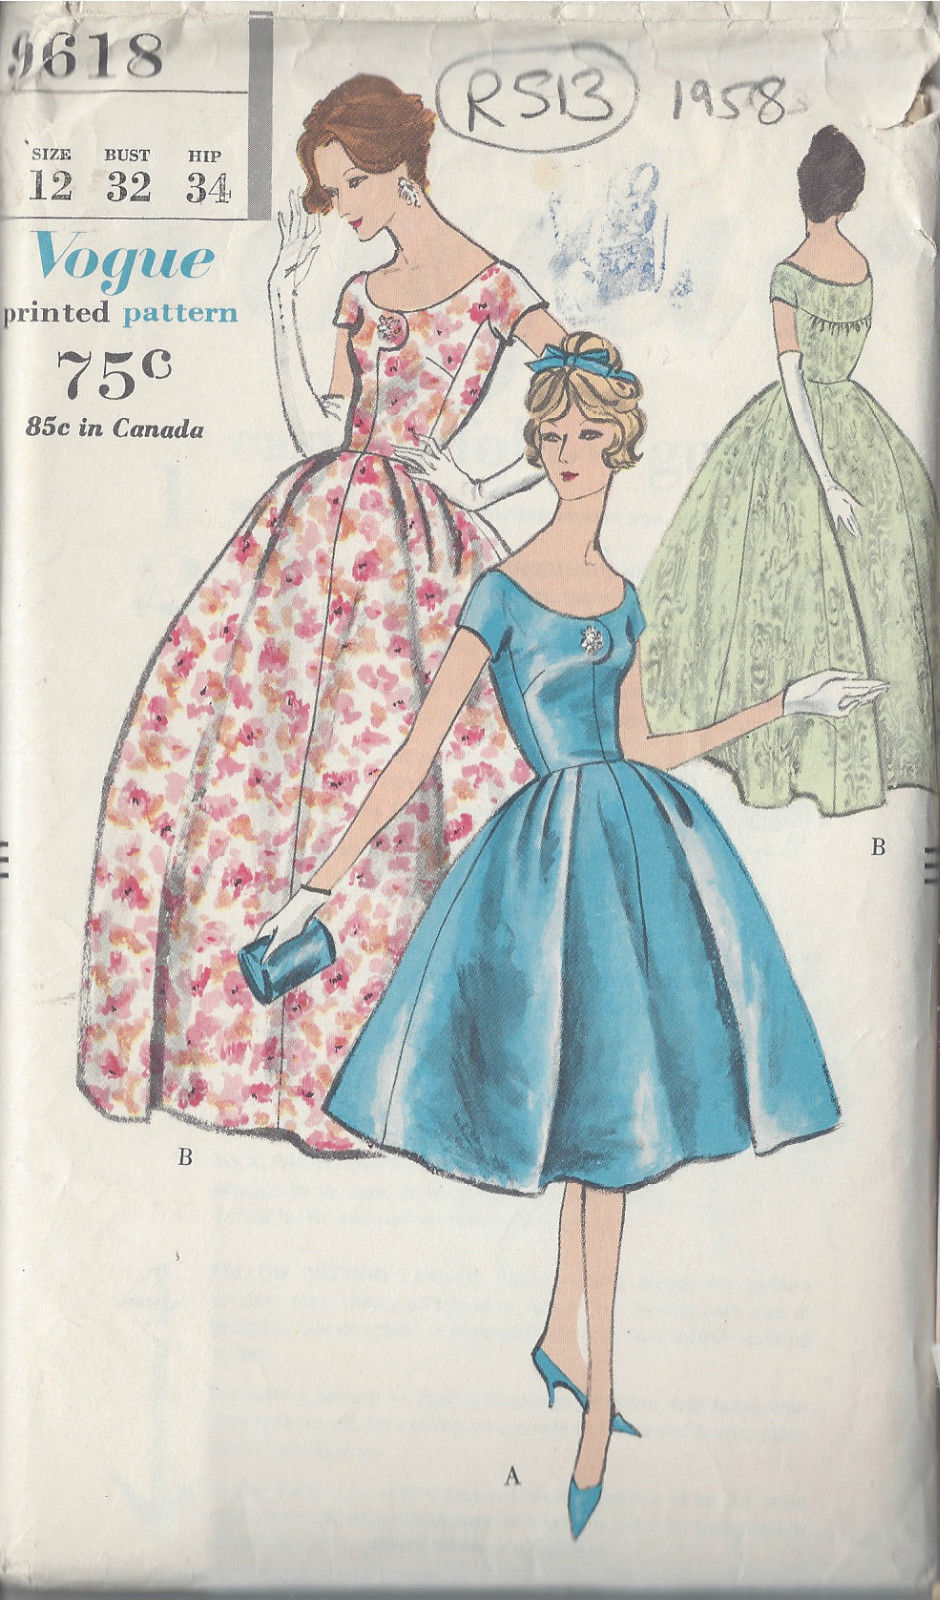 Buy 1936 Vintage Sewing Pattern B42 DRESS 1450 at Ubuy Ghana